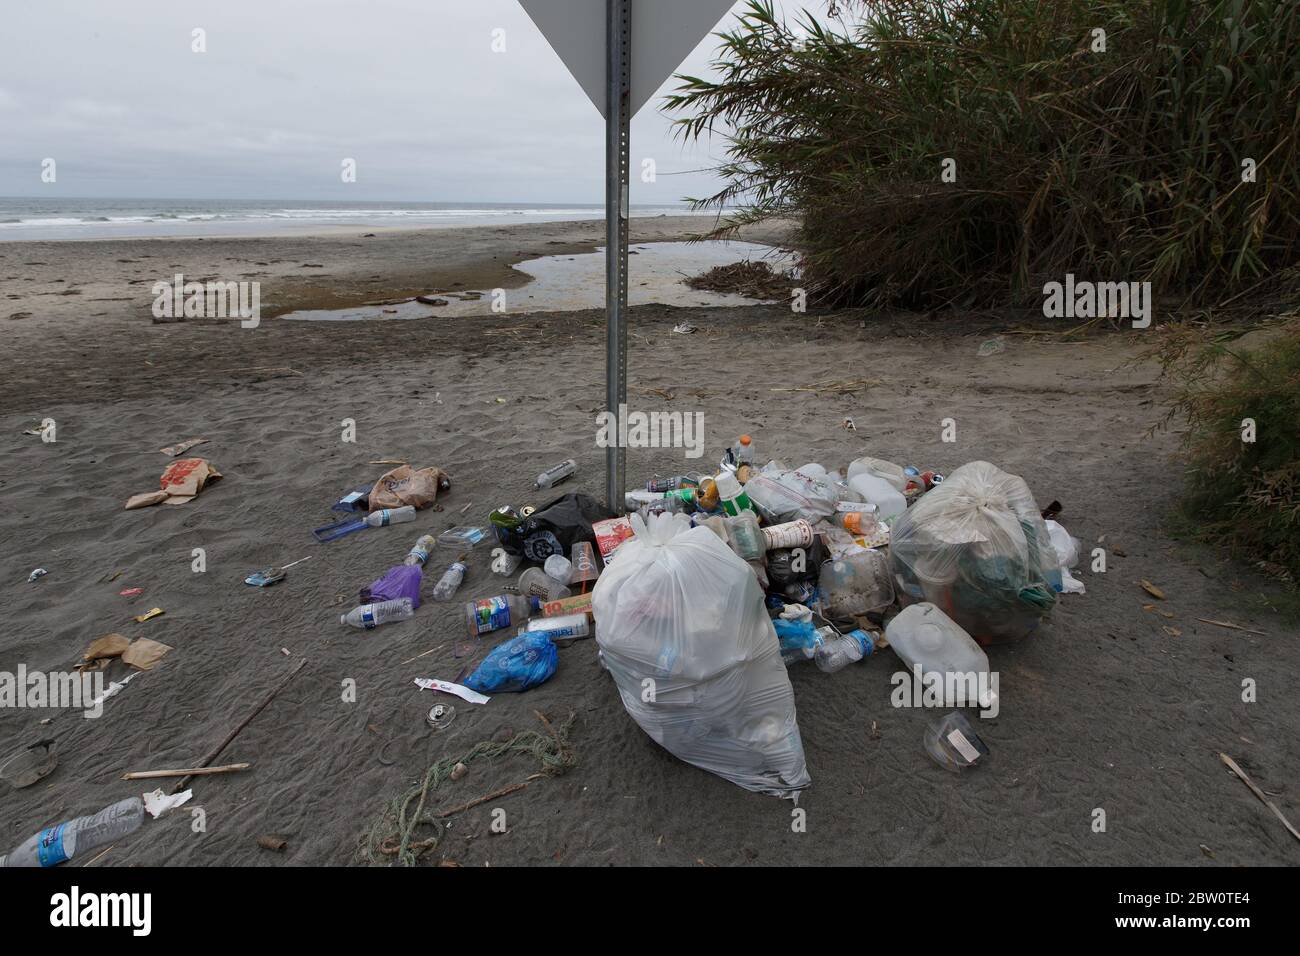 La Jolla, Californie. 28 mai 2020. Les déchets s'accumulent sur le sable à Blacks Beach. Banque D'Images